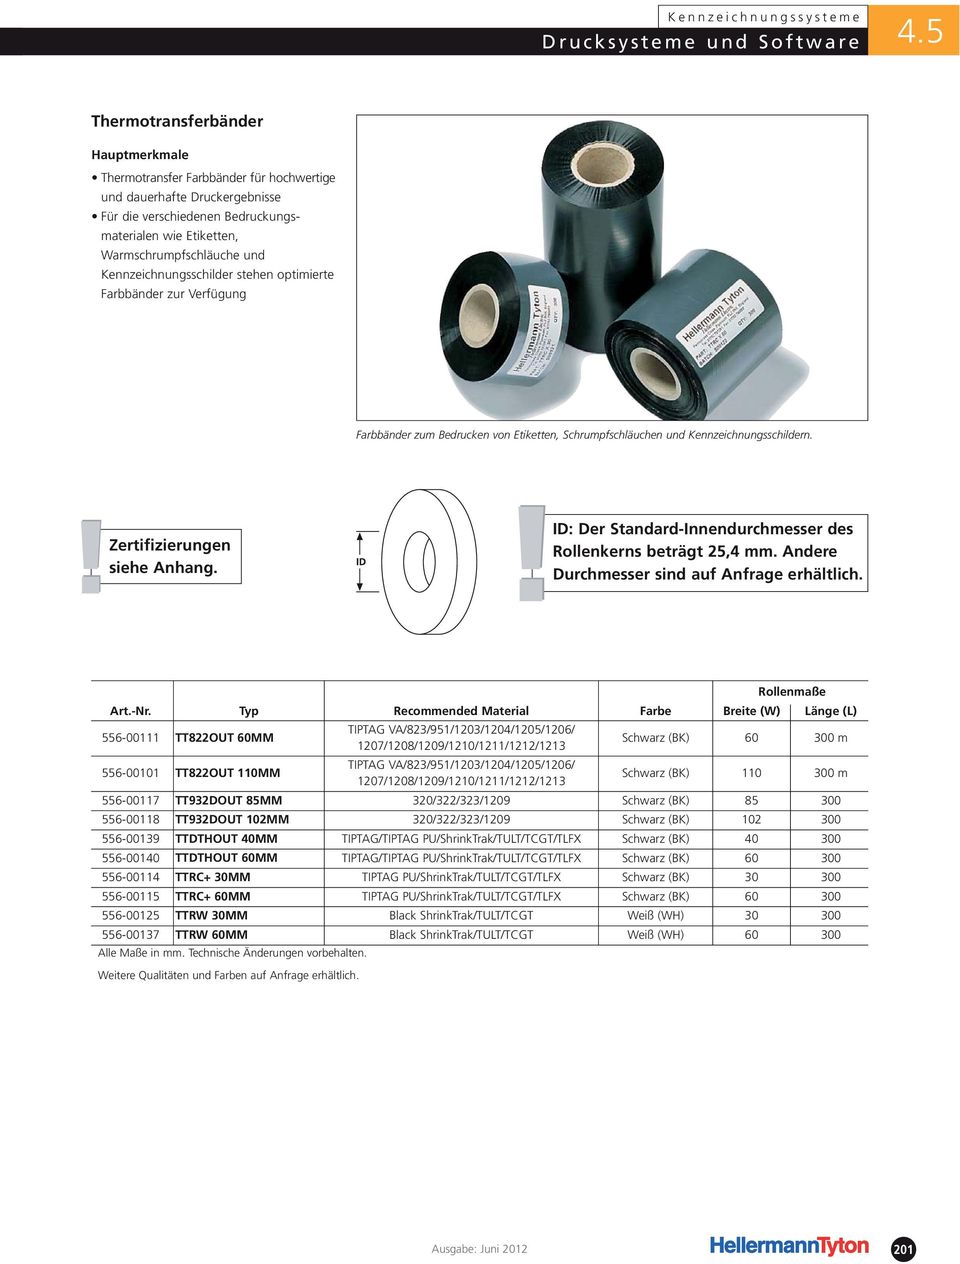 ! ID: Der Standard-Innendurchmesser des Rollenkerns beträgt 25,4 mm. Andere Durchmesser sind auf Anfrage erhältlich.